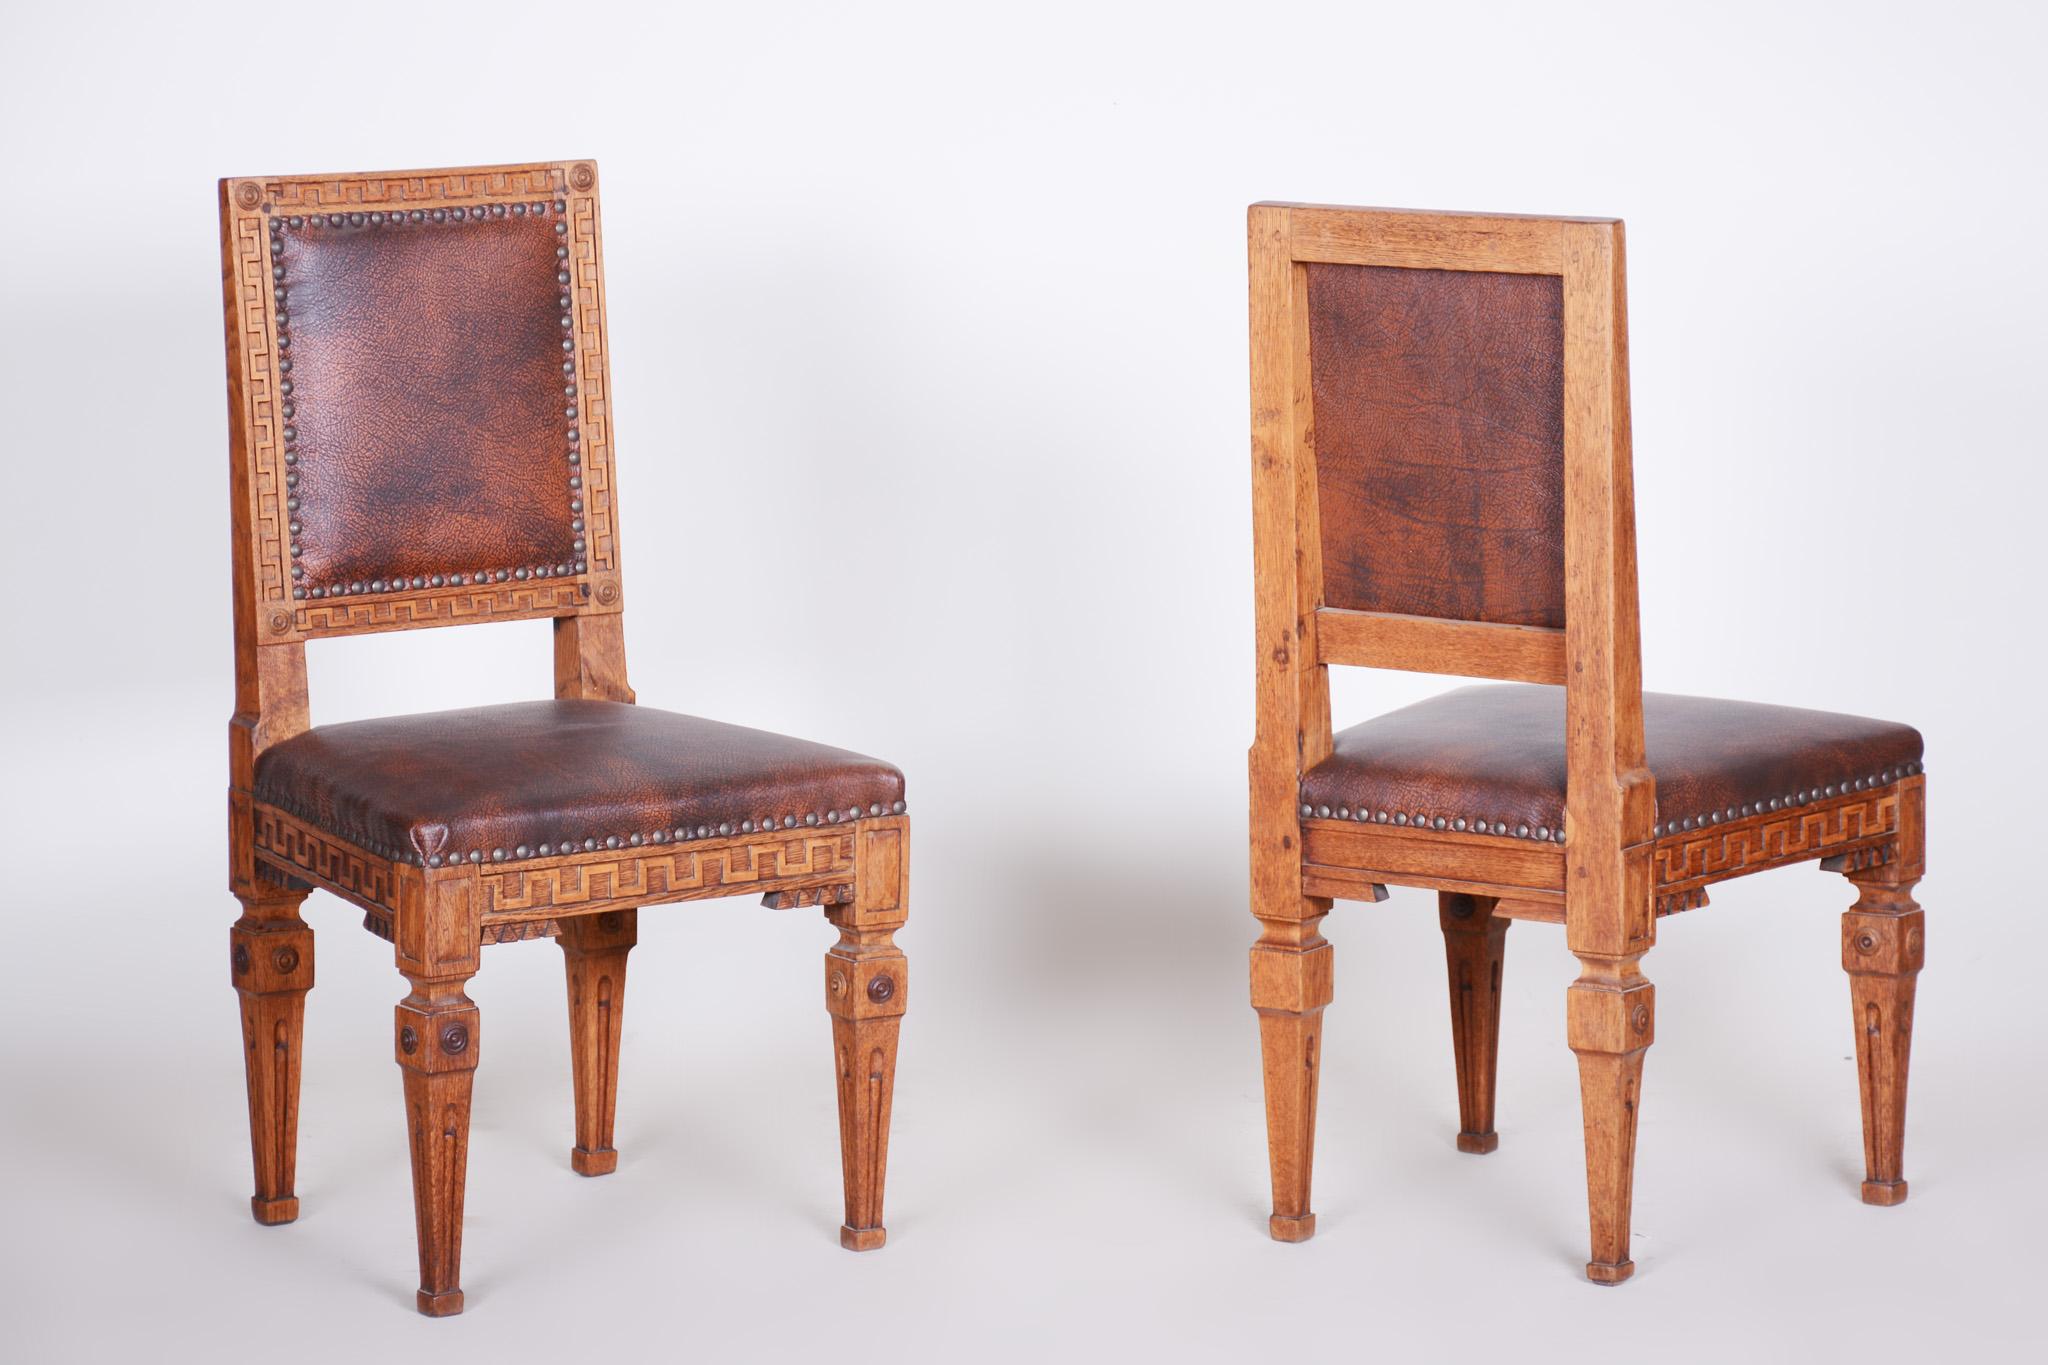 Pair of Early 19th Century Czech Biedermeier Oak Chairs, Czechia, 1800s For Sale 6